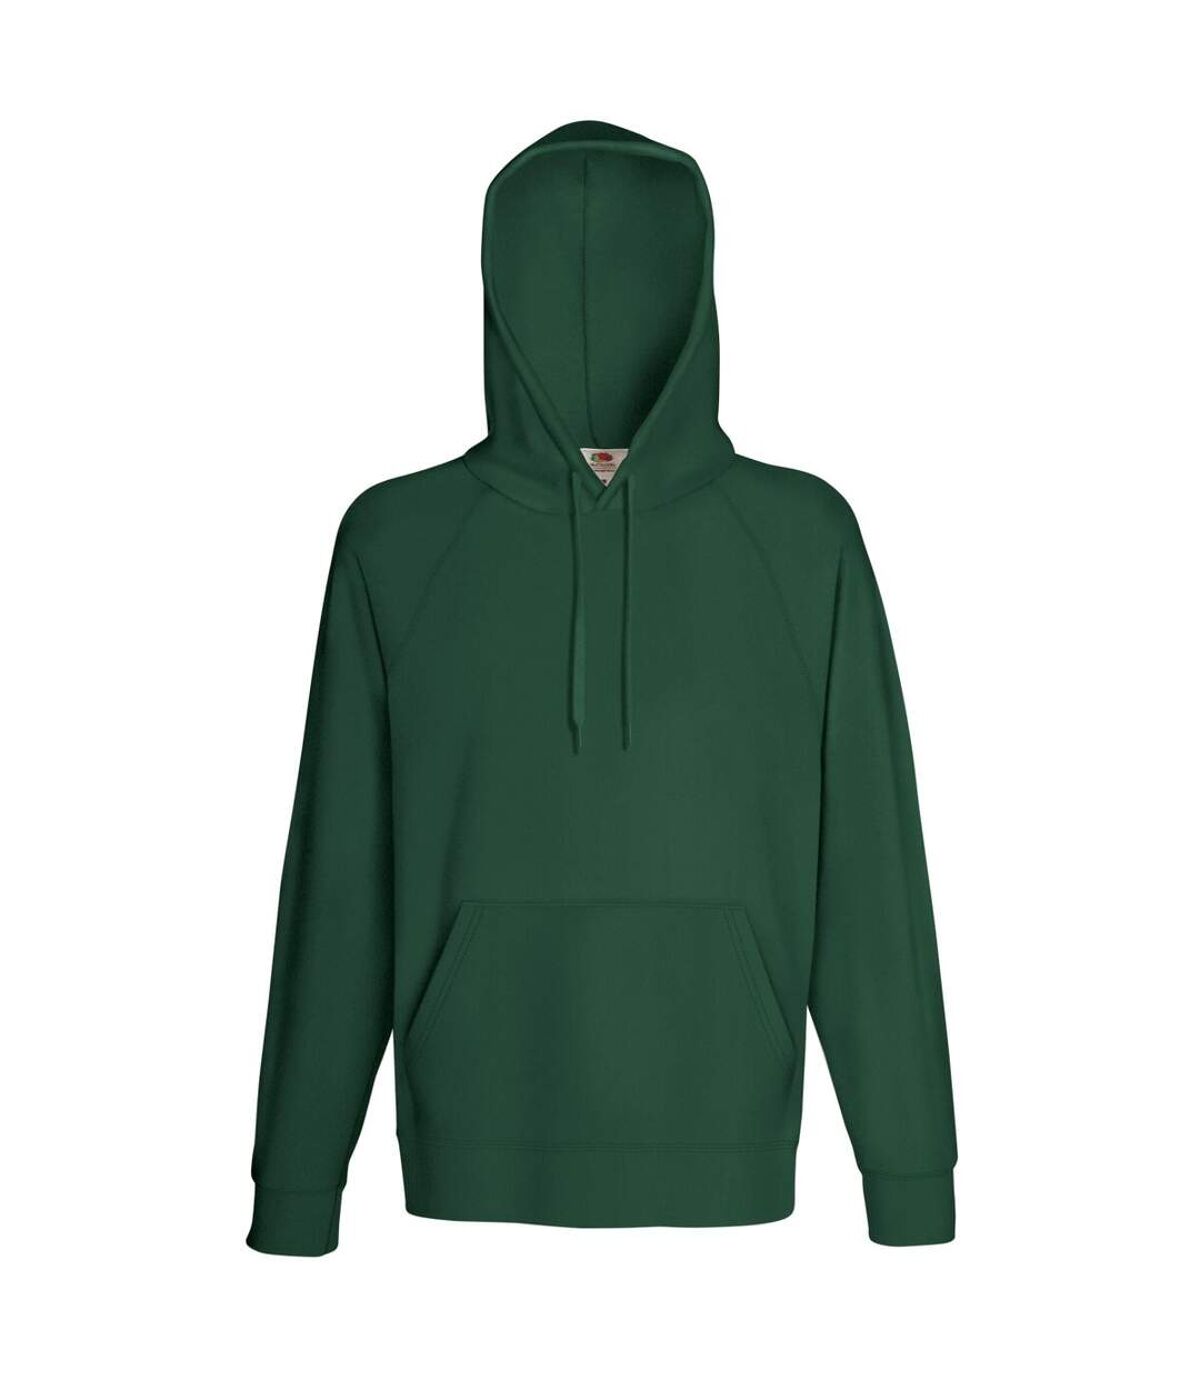 Fruit Of The Loom Mens Lightweight Hooded Sweatshirt / Hoodie (240 GSM) (Bottle Green) - UTBC2654